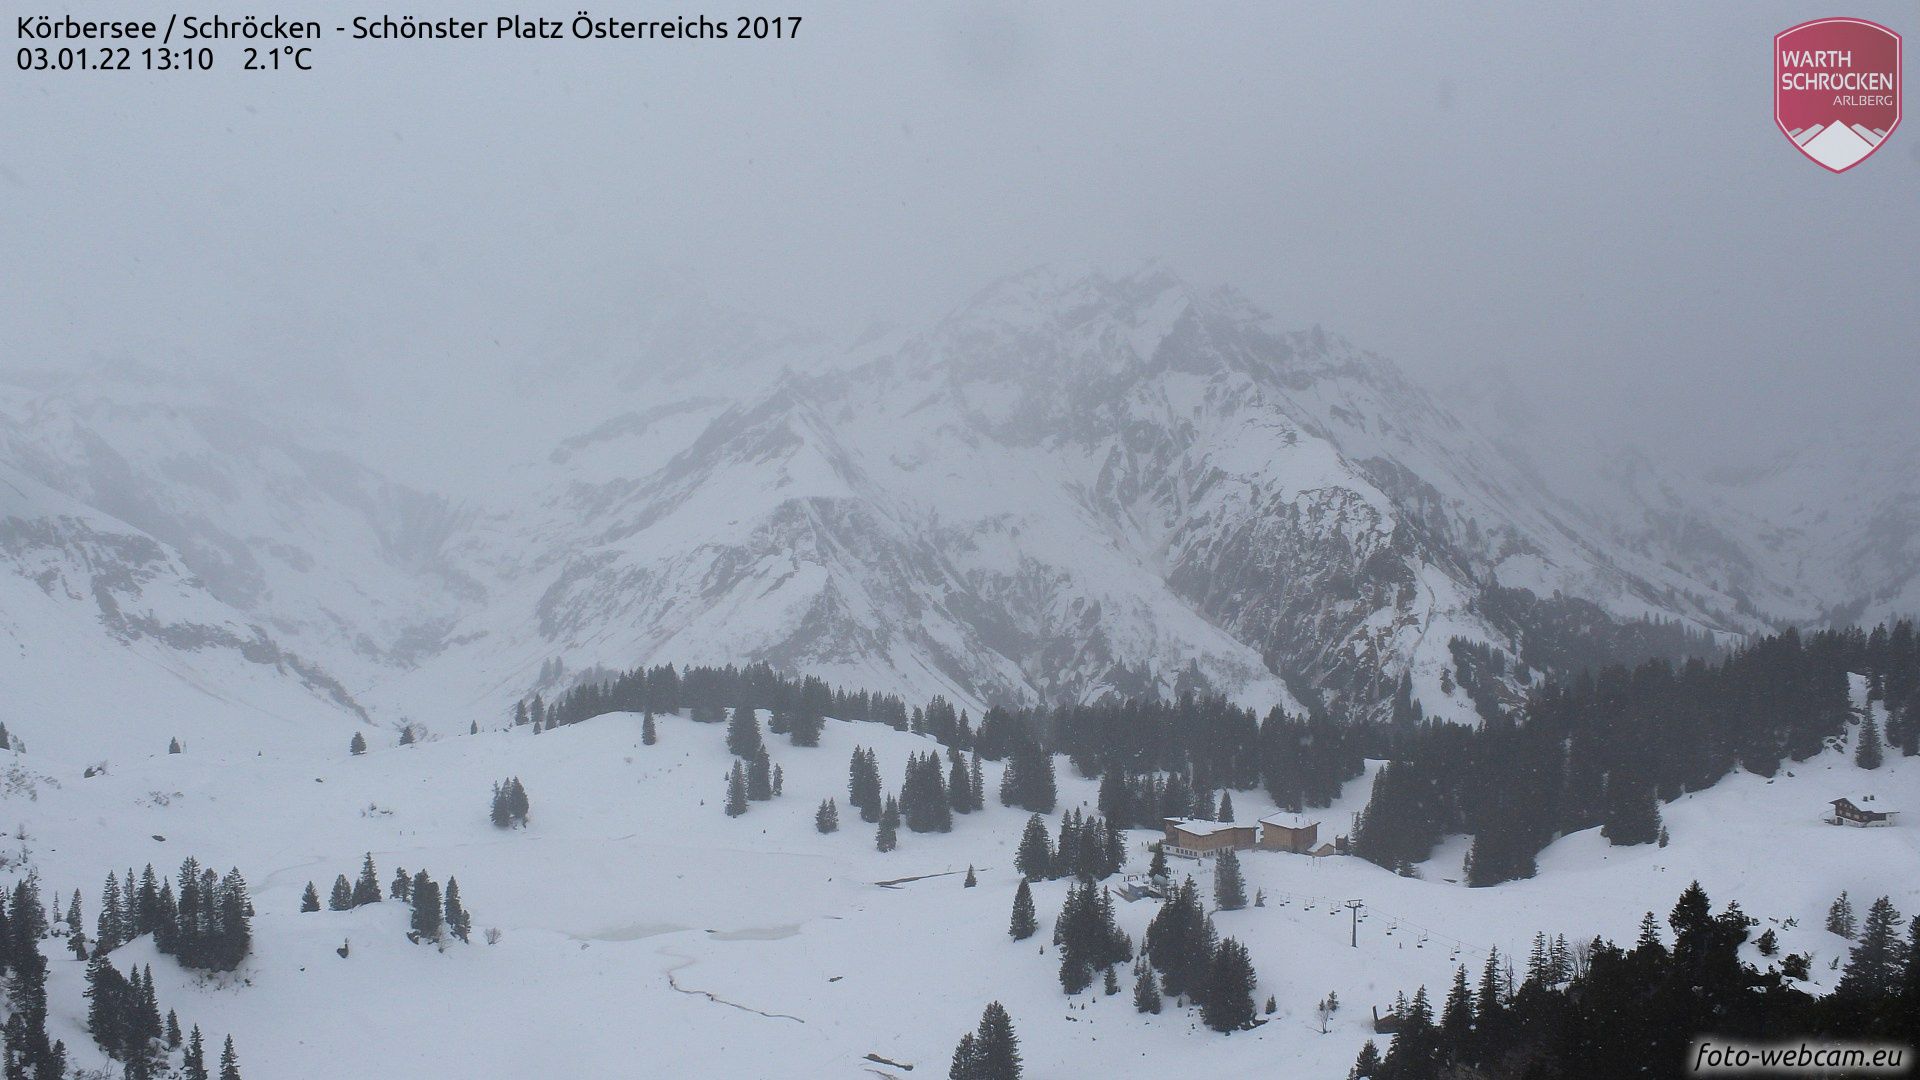 Net zoals vandaag blijft het ook morgen bewolkt in de noordelijke gebieden, zoals hier in Warth-Schröcken (foto-webcam.eu)